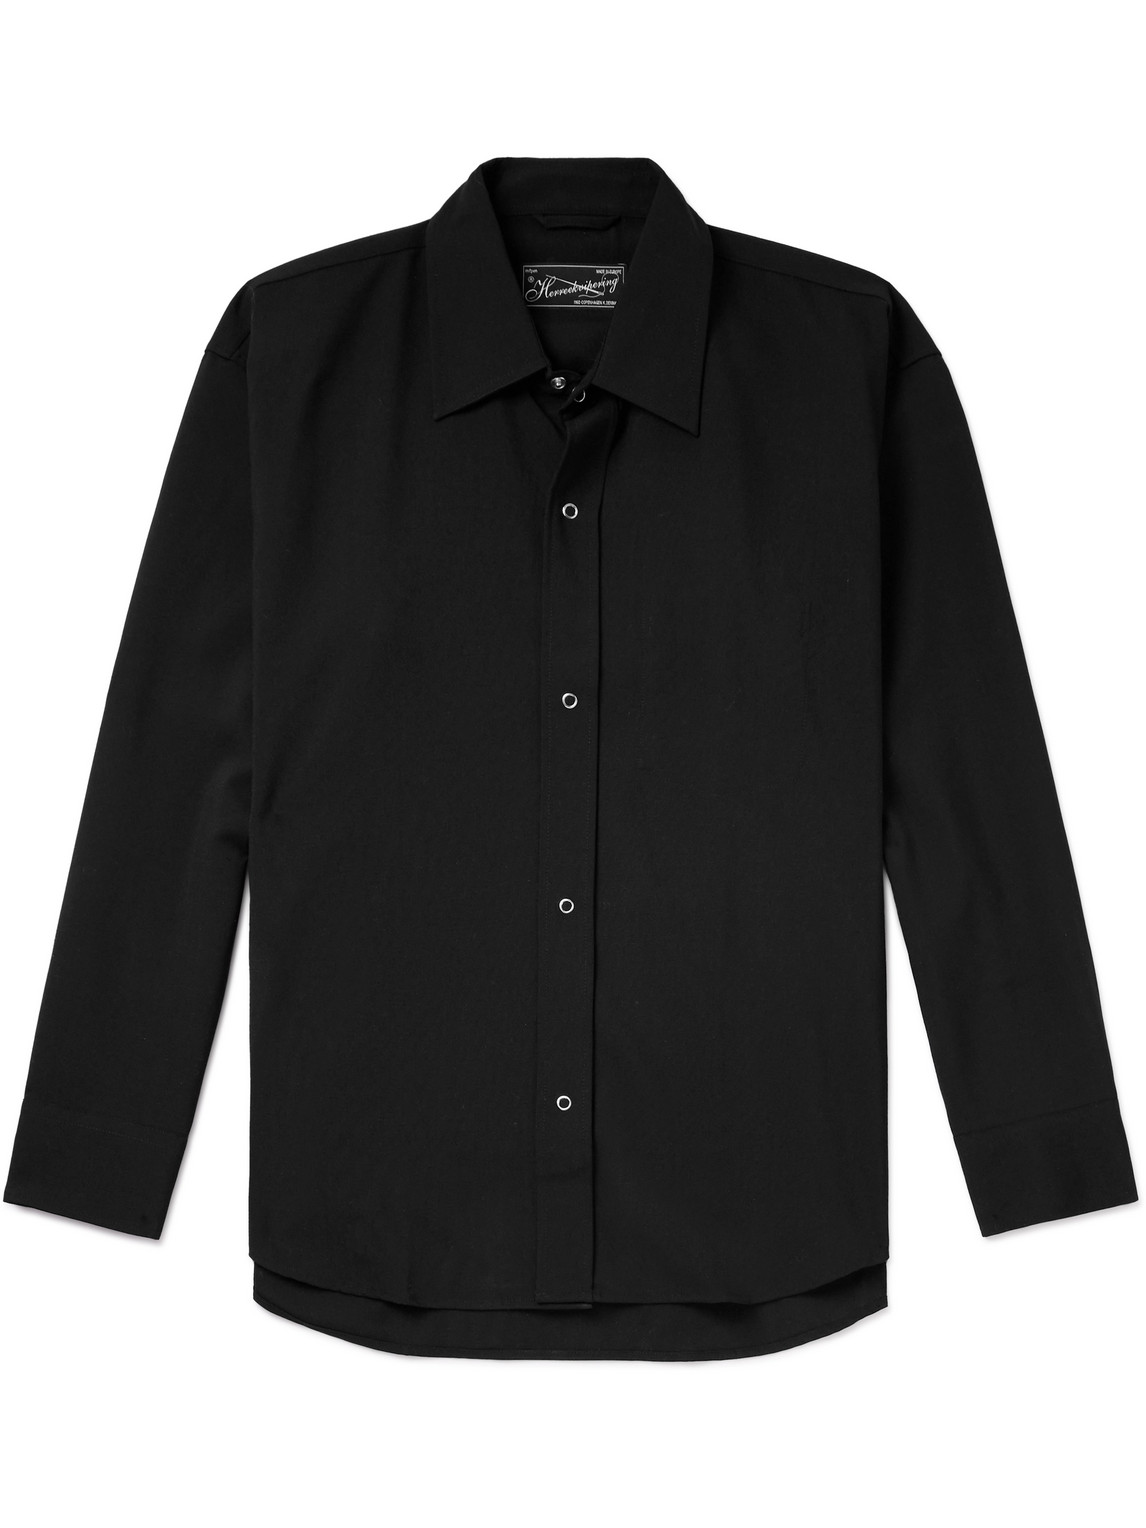 Mfpen Black Casino Shirt In Black Wool